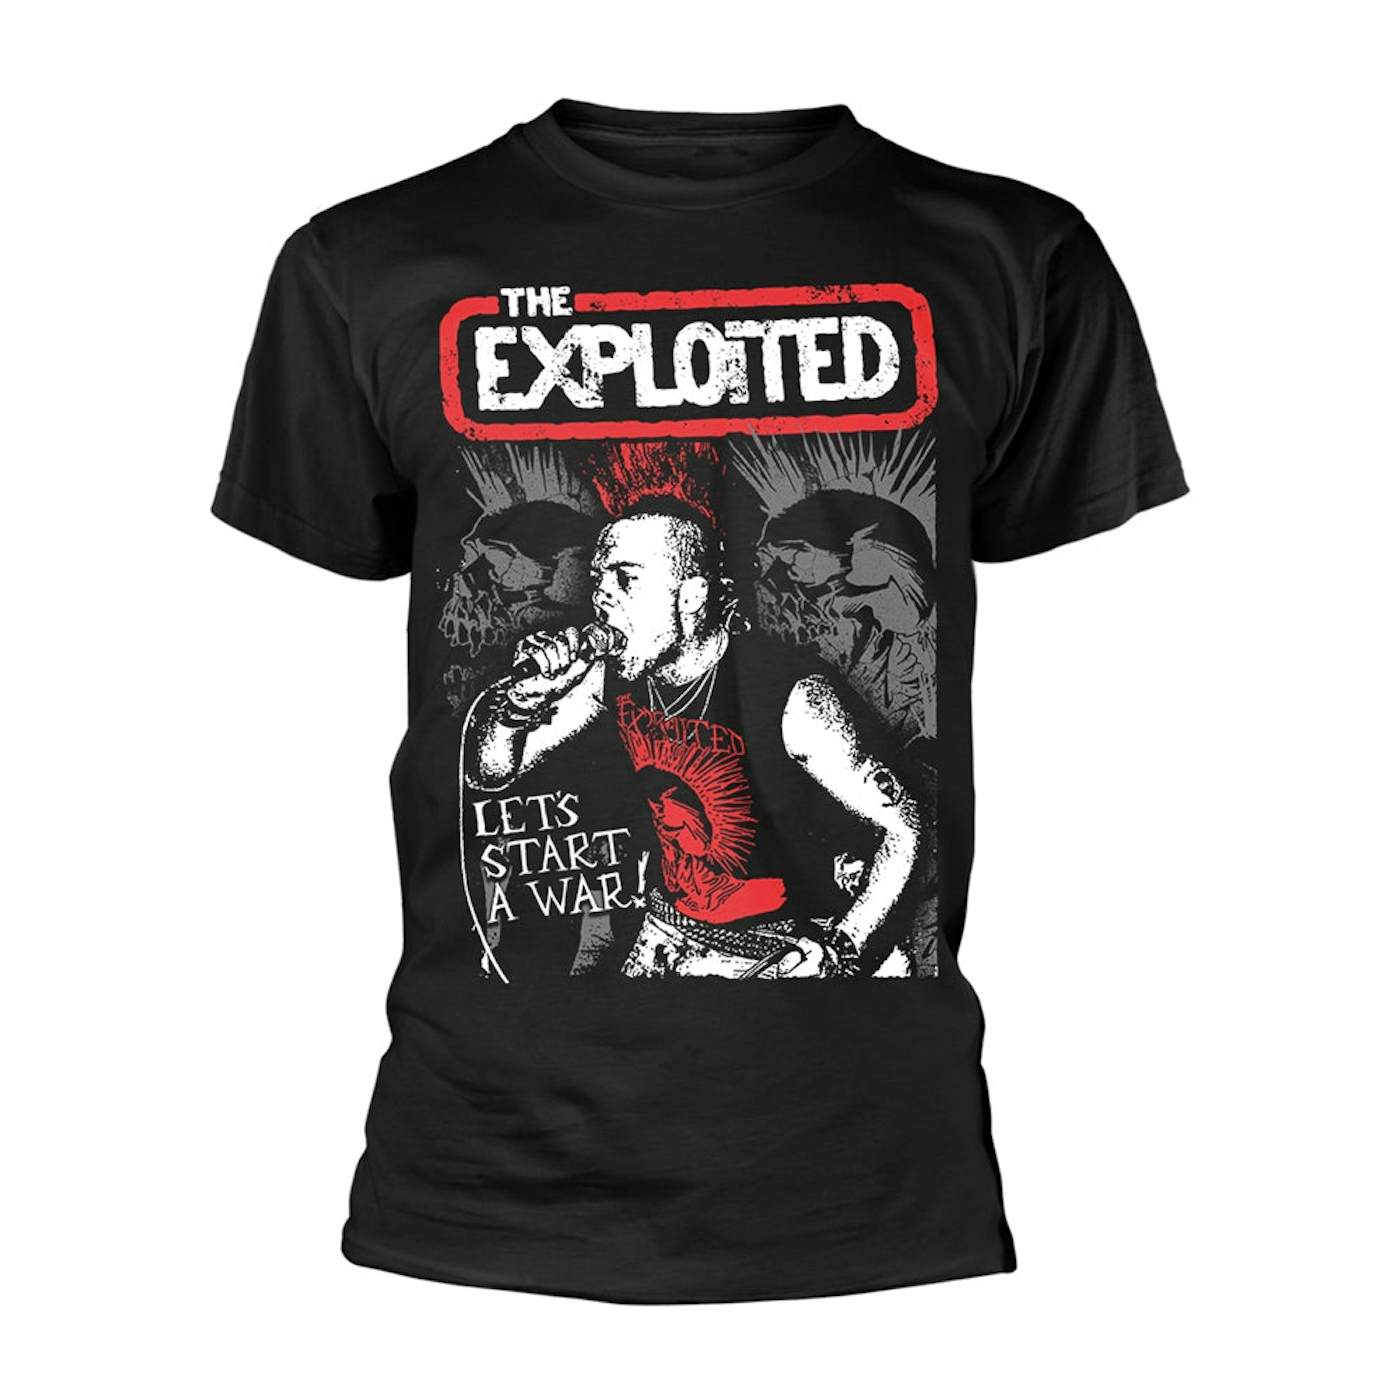 The Exploited T Shirt - Let'S Start A War